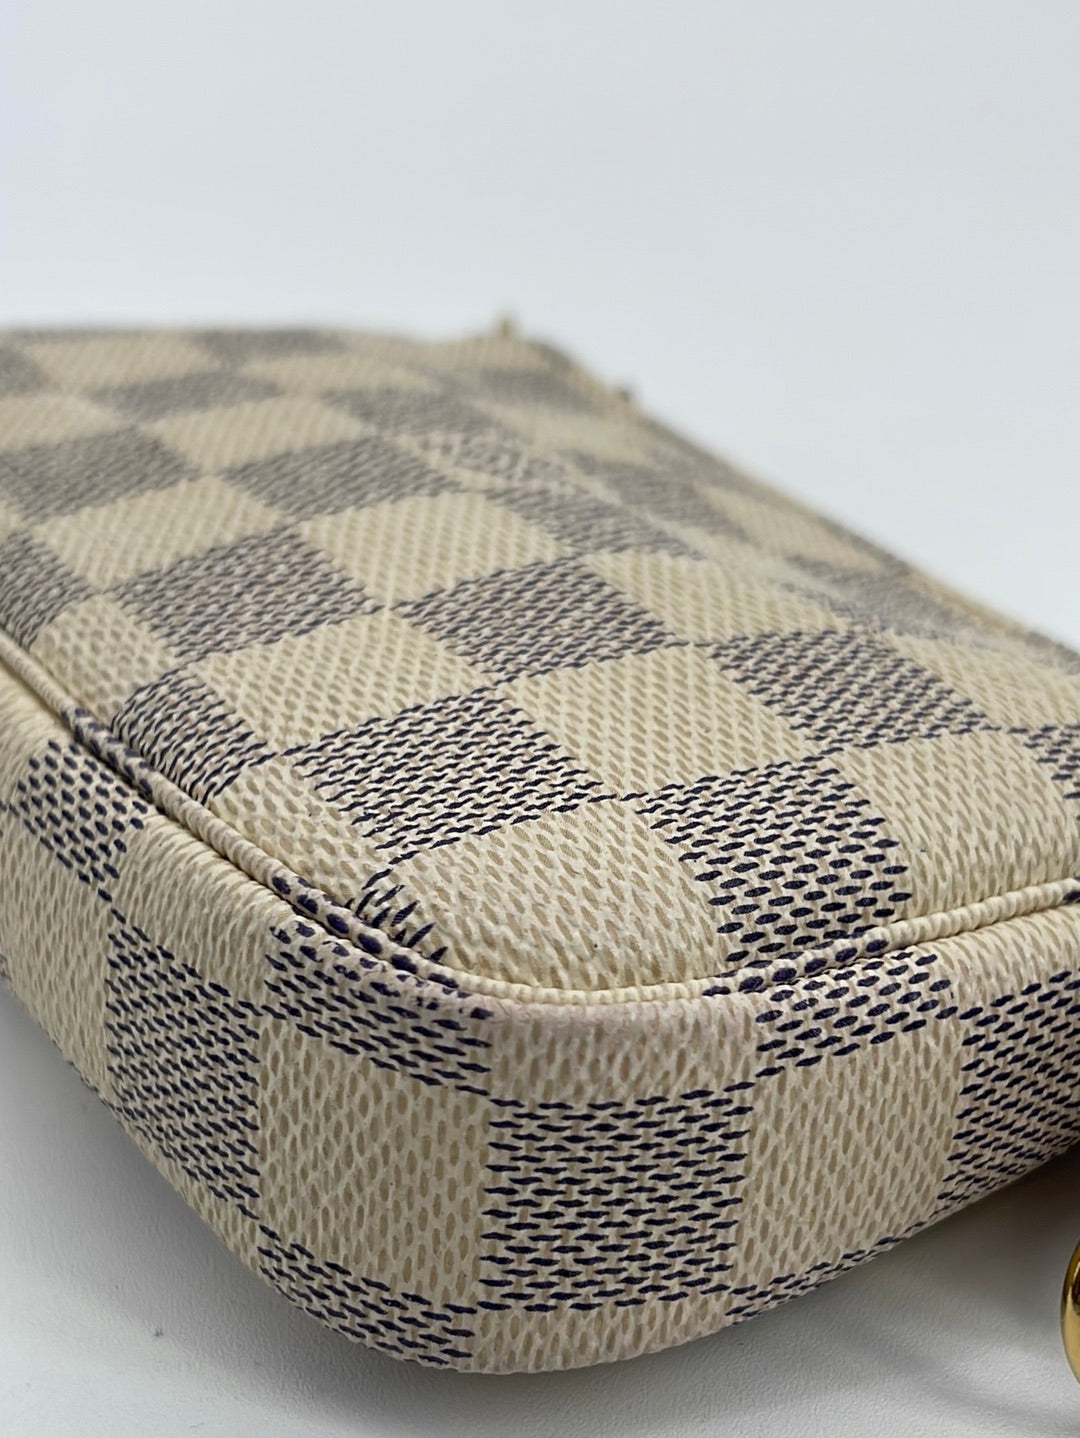 Louis Vuitton 2010 pre-owned Damier Azur Mini Pochette Accessoires Handbag  - Farfetch